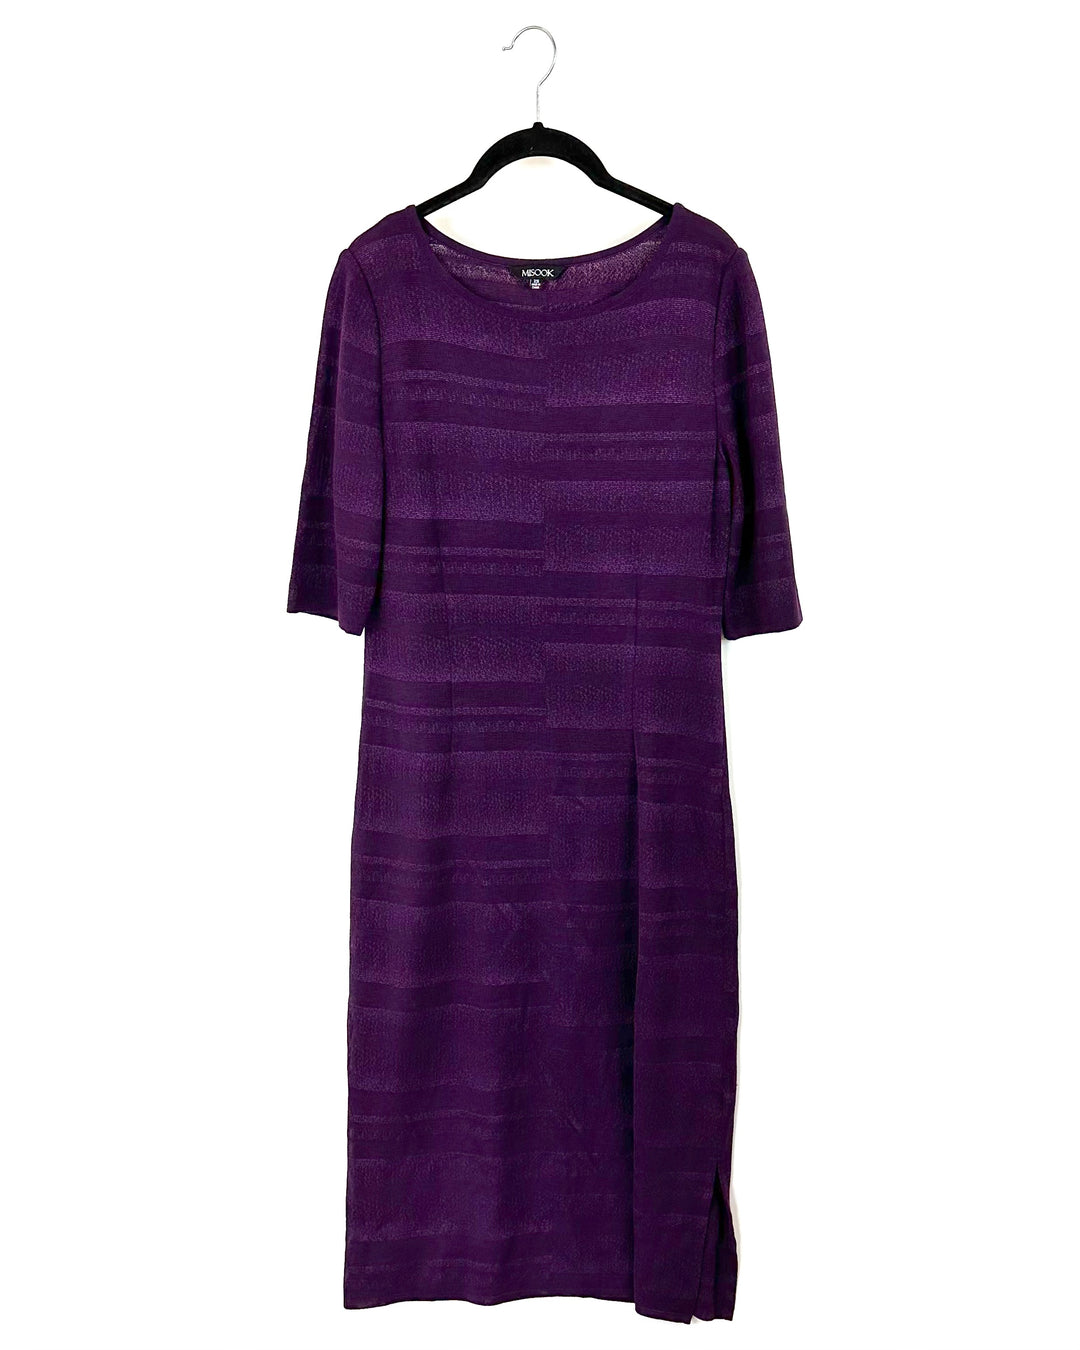 Purple Knit Midi Dress - Size 4-6